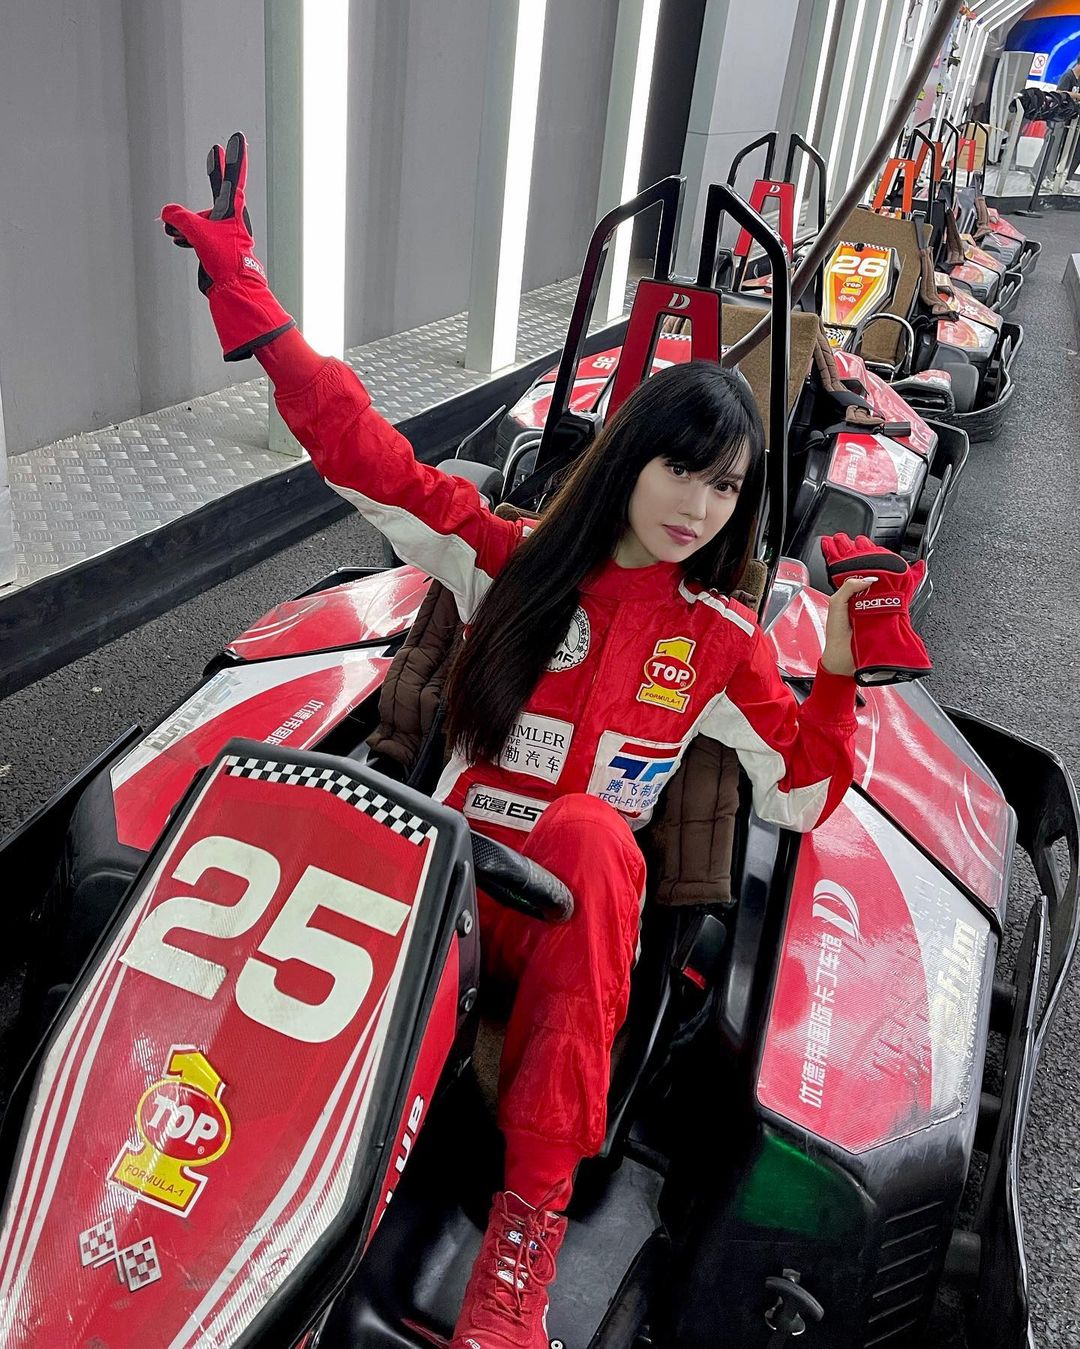 Đầu tiên, Yumi Tôn Vũ là người đẹp rất mê các thể thao nên thường xuyên chia sẻ các hình ảnh liên quan đến hoạt động này như đua xe, tập gym,...